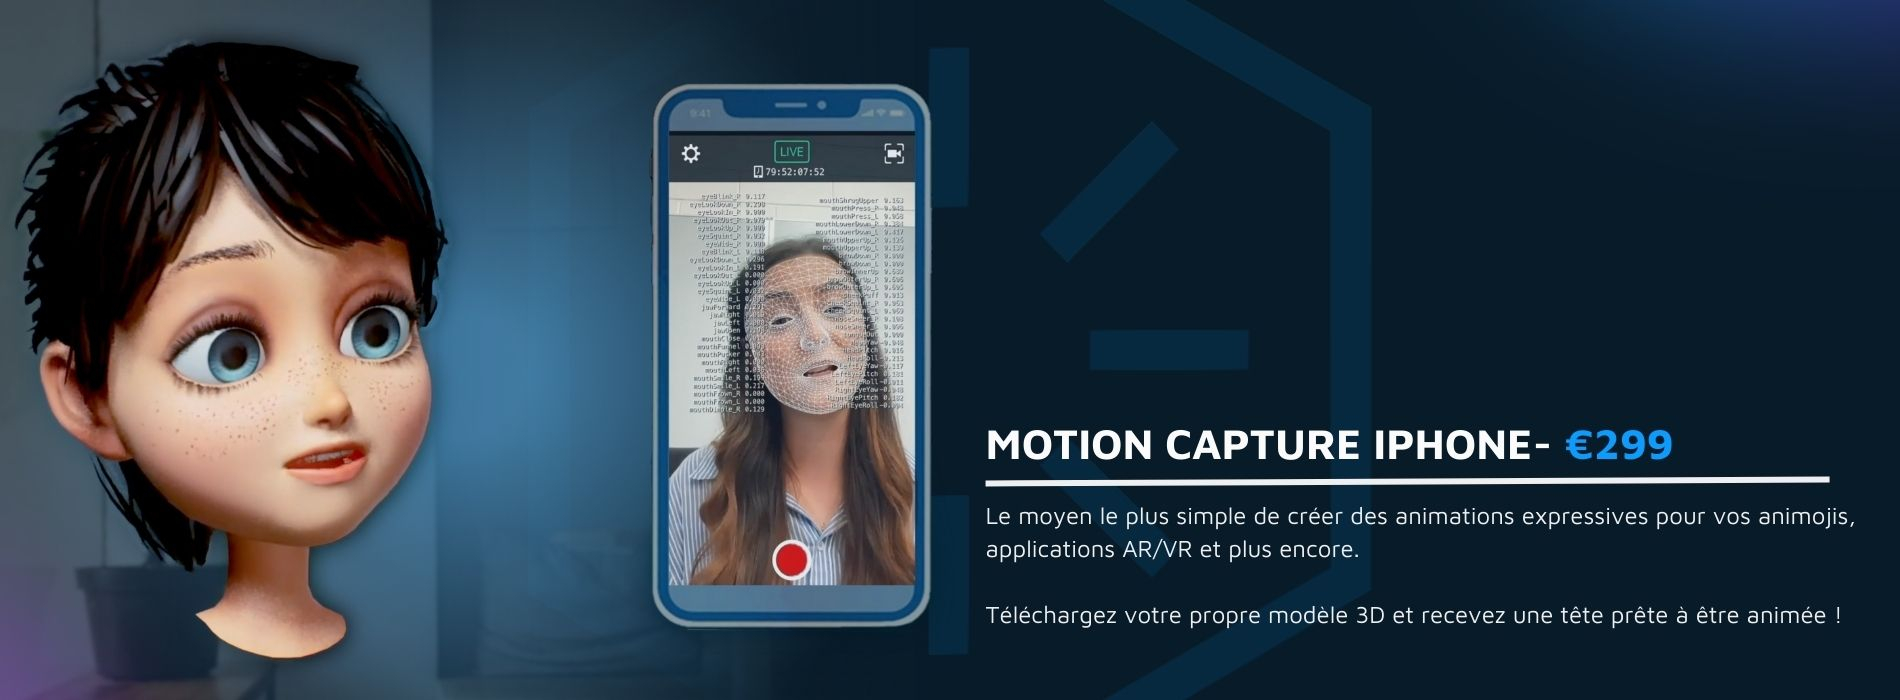 Capture de mouvement à partir d'un iphone pour réaliser une animation sur un modèle 3D